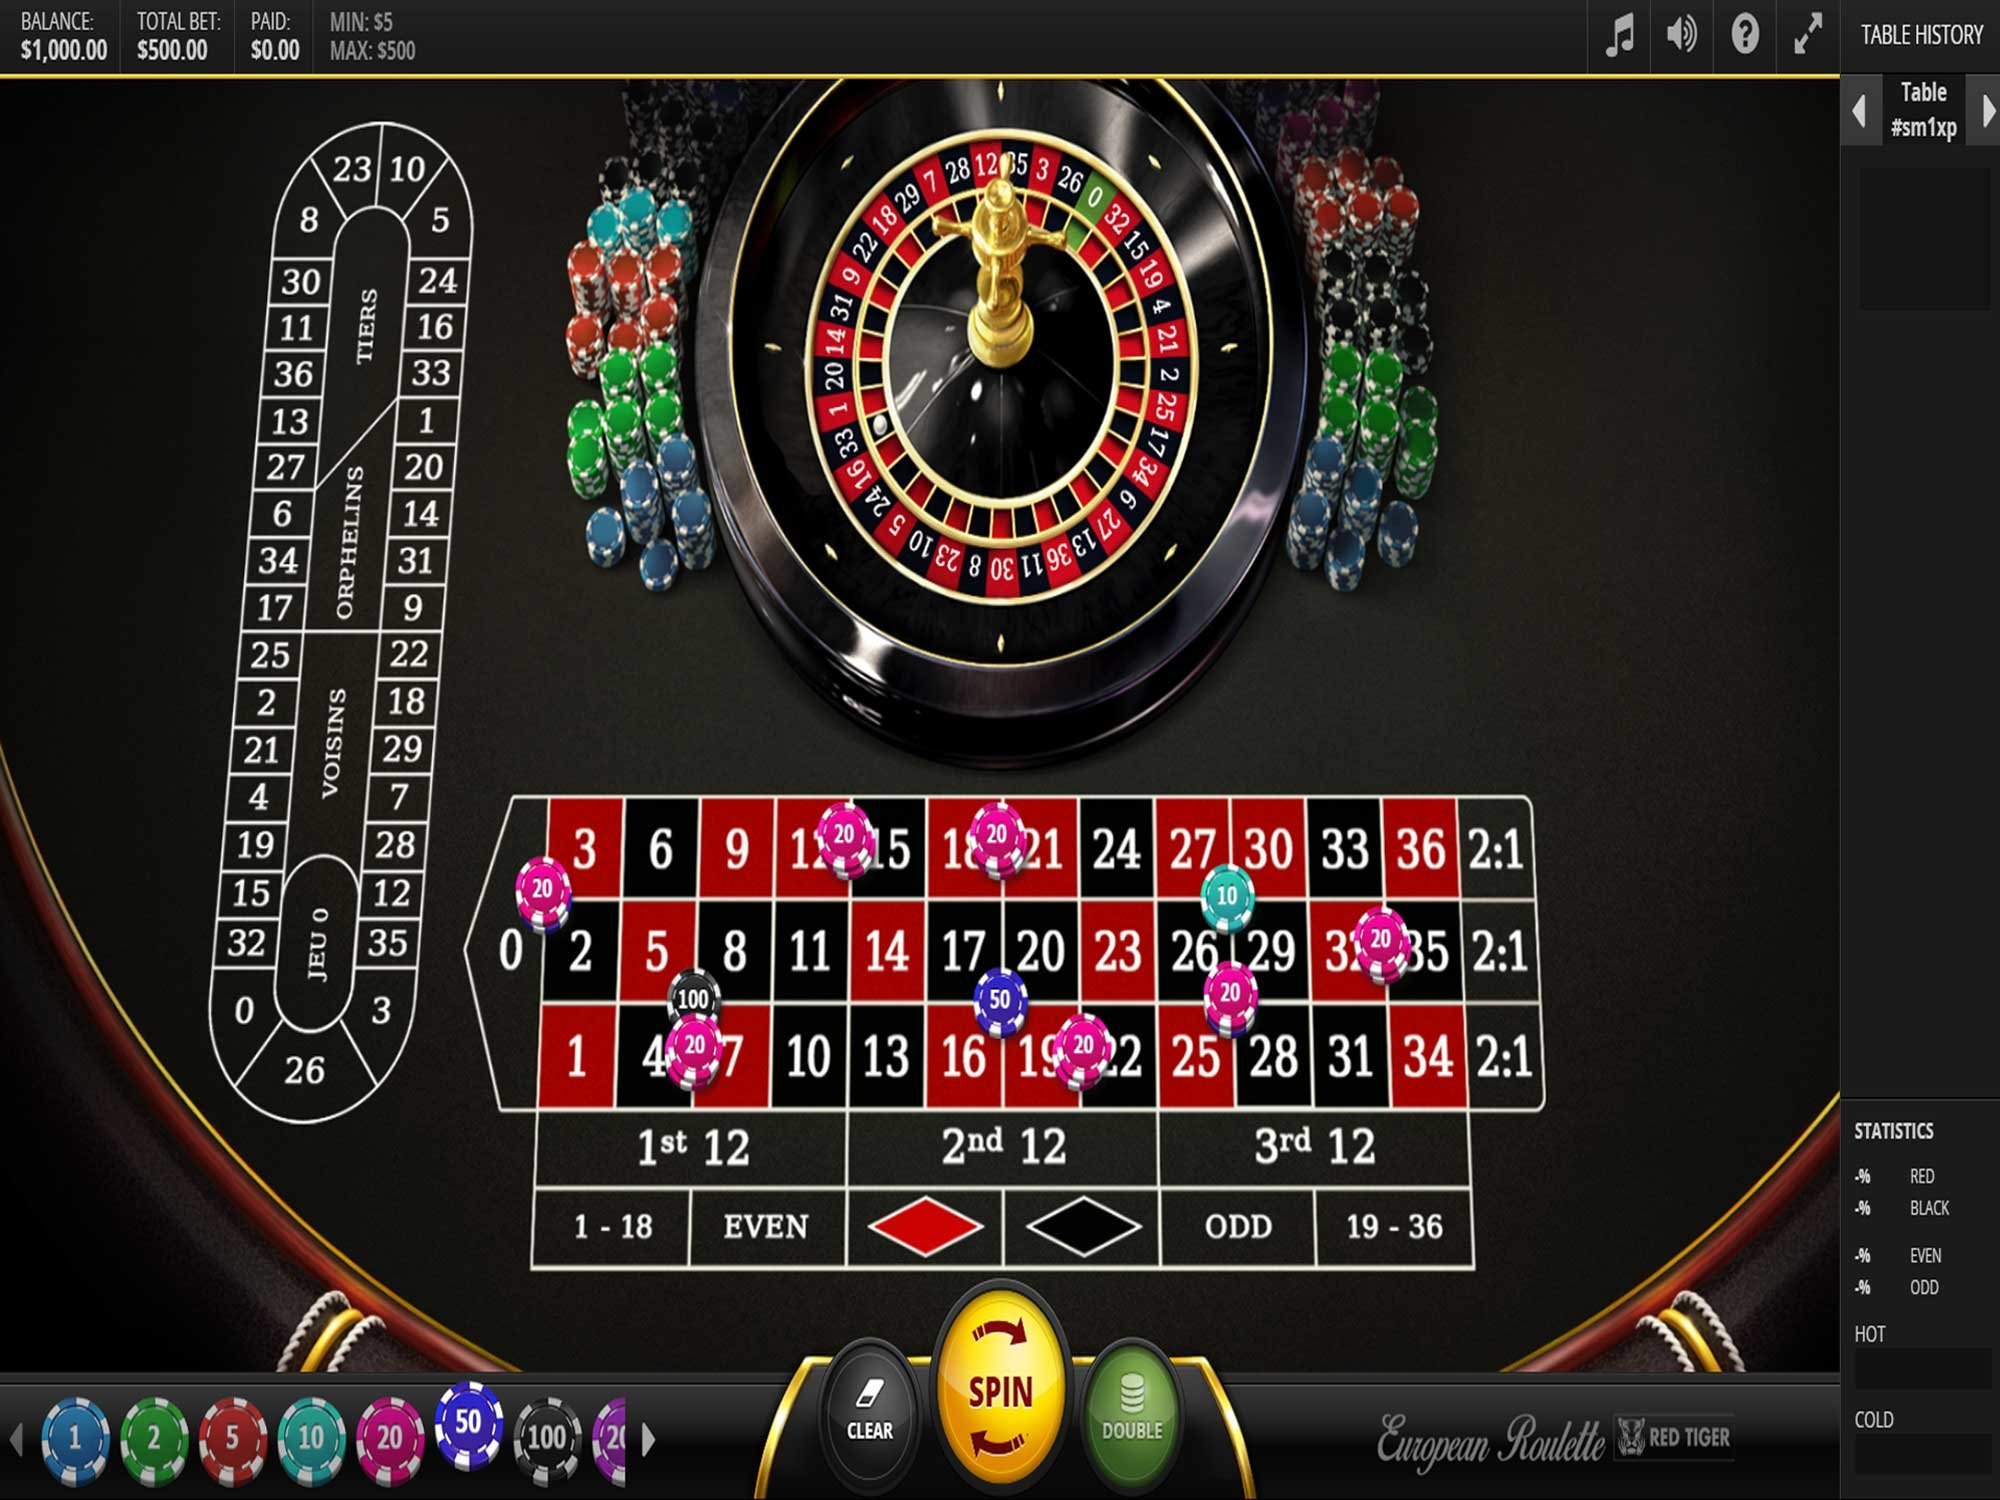 European Roulette screenshot